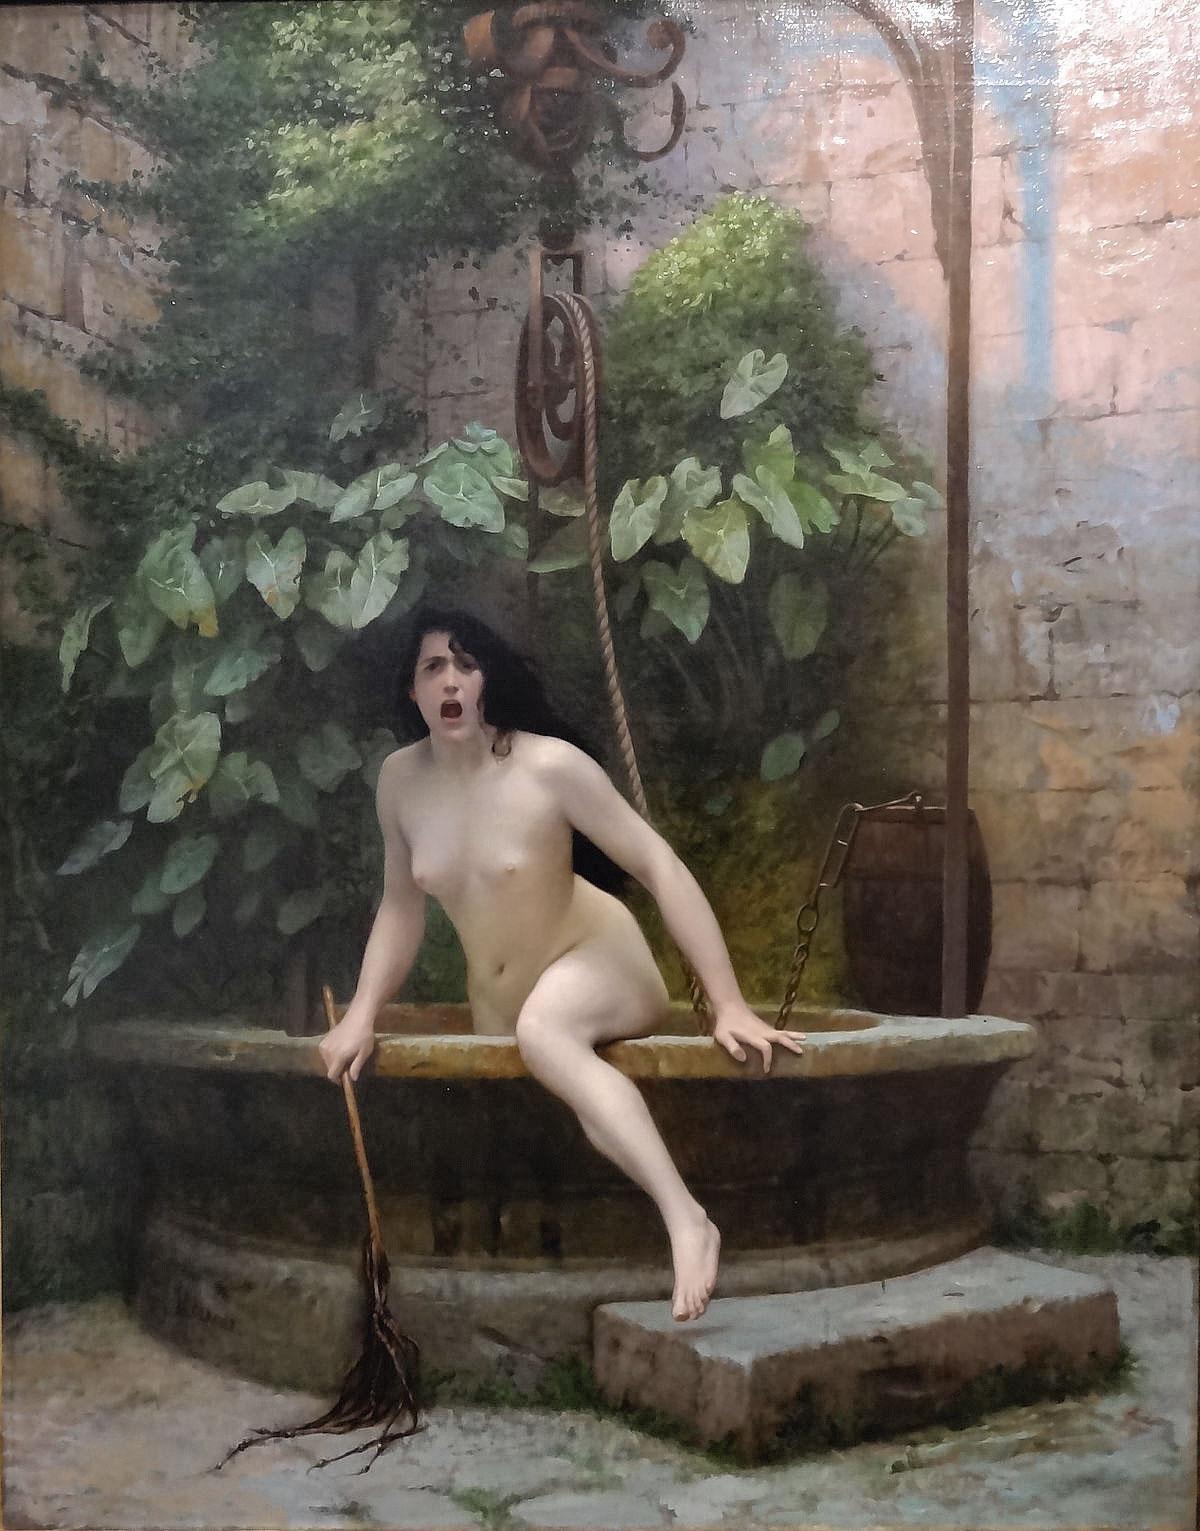 La Vérité sortant du puits, tableau de Jean-Léon Gérôme (1896), accompagne souvent le conte, sur le Web.